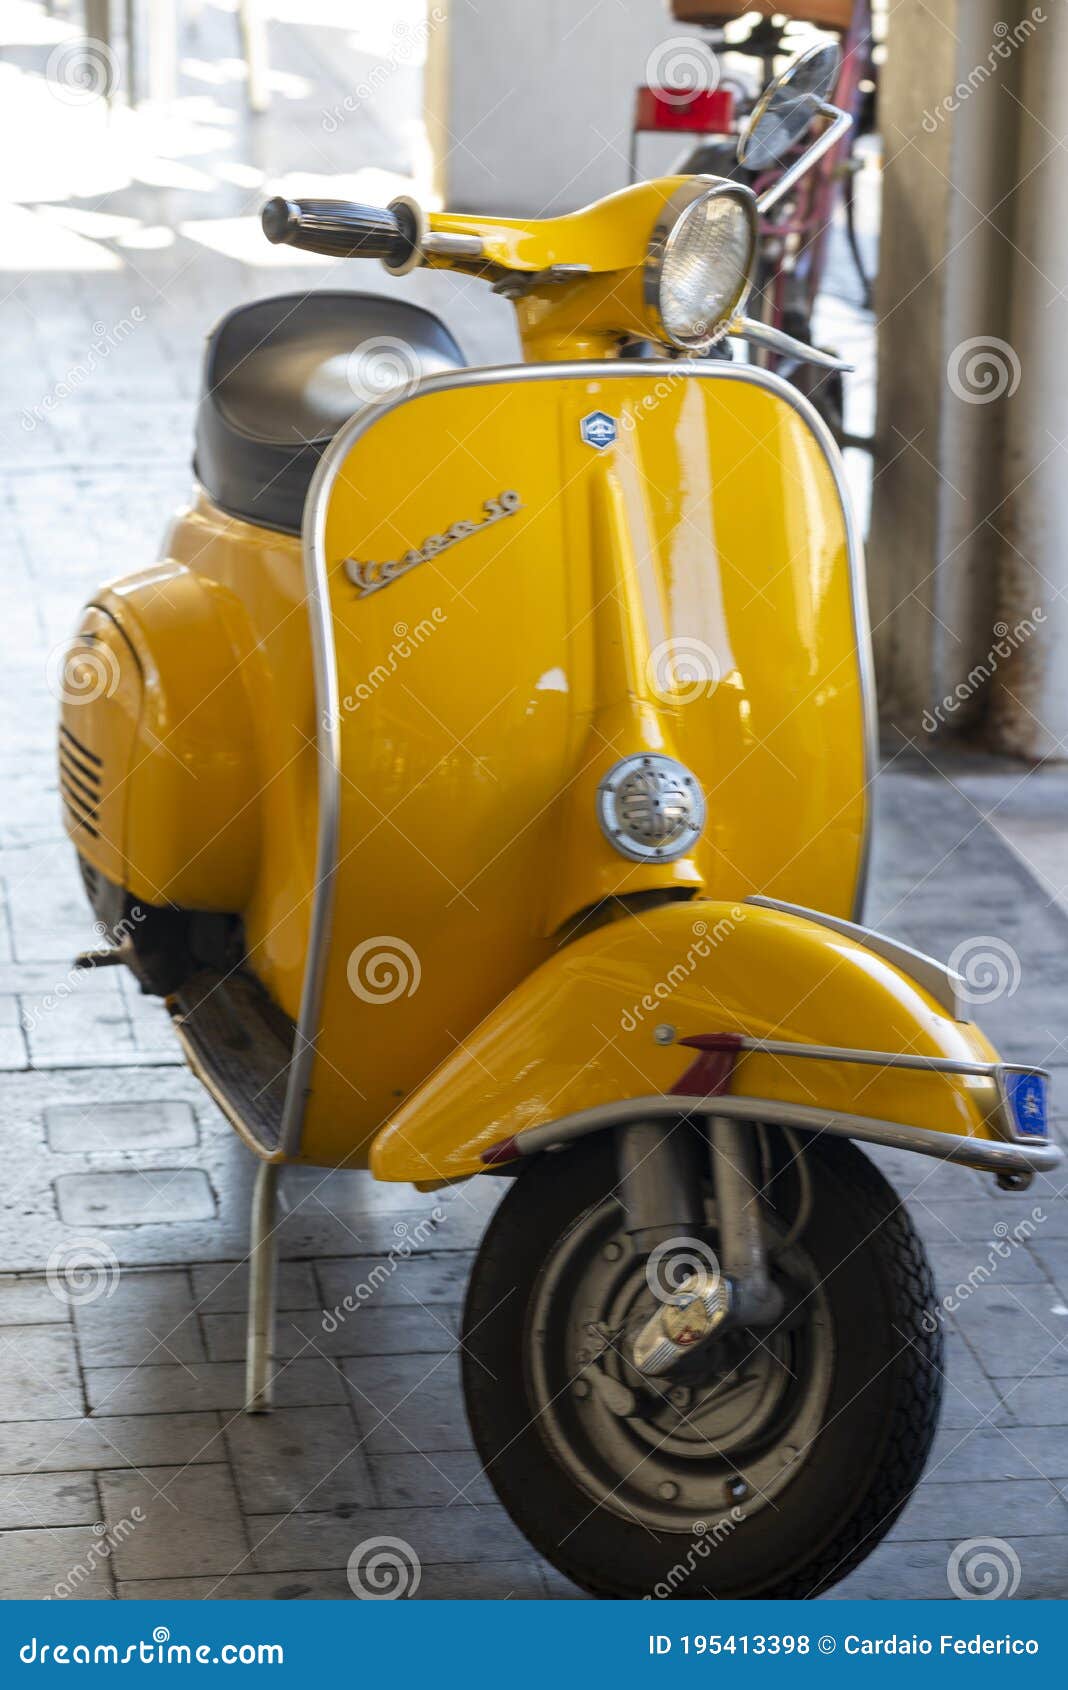 Piaggio Vespa in Yellow Color Editorial Stock Photo - Image of bike: